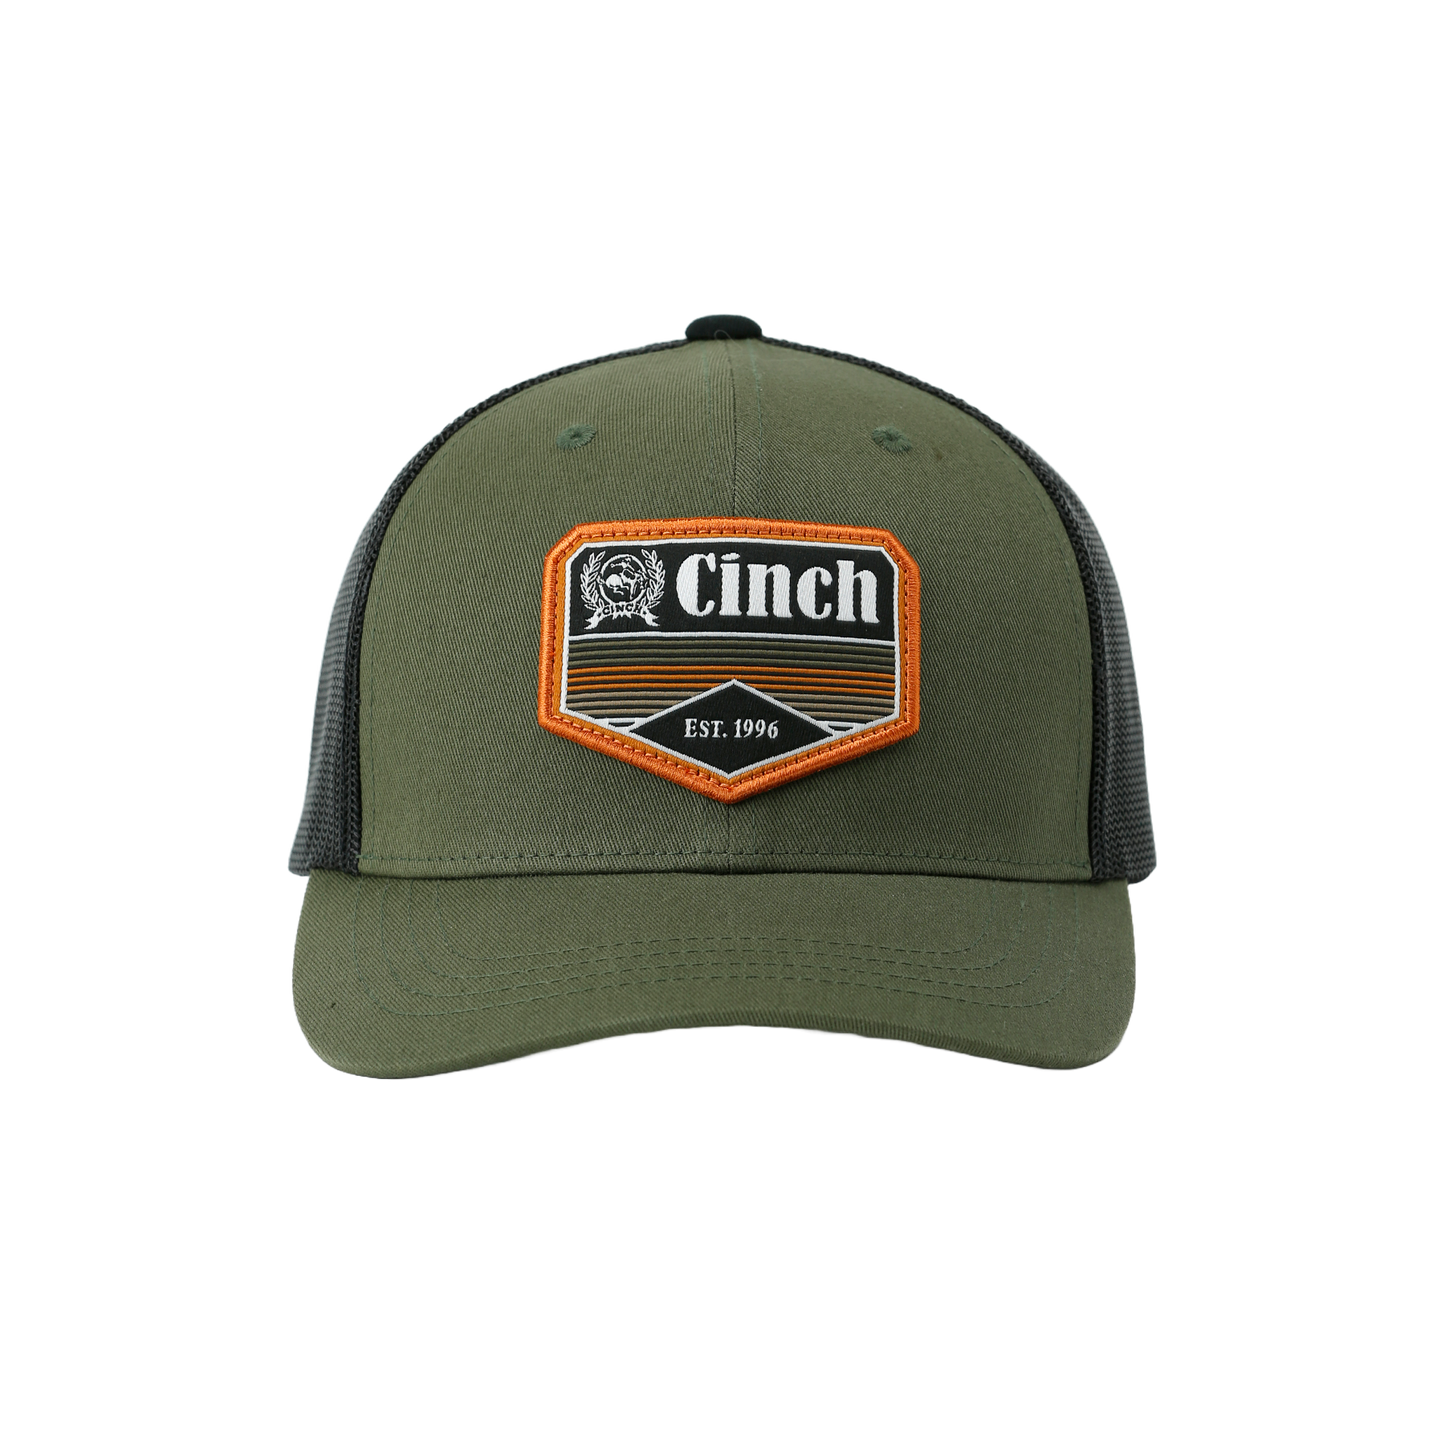 Cinch Men's Olive Green Trucker Cap MCC0660632